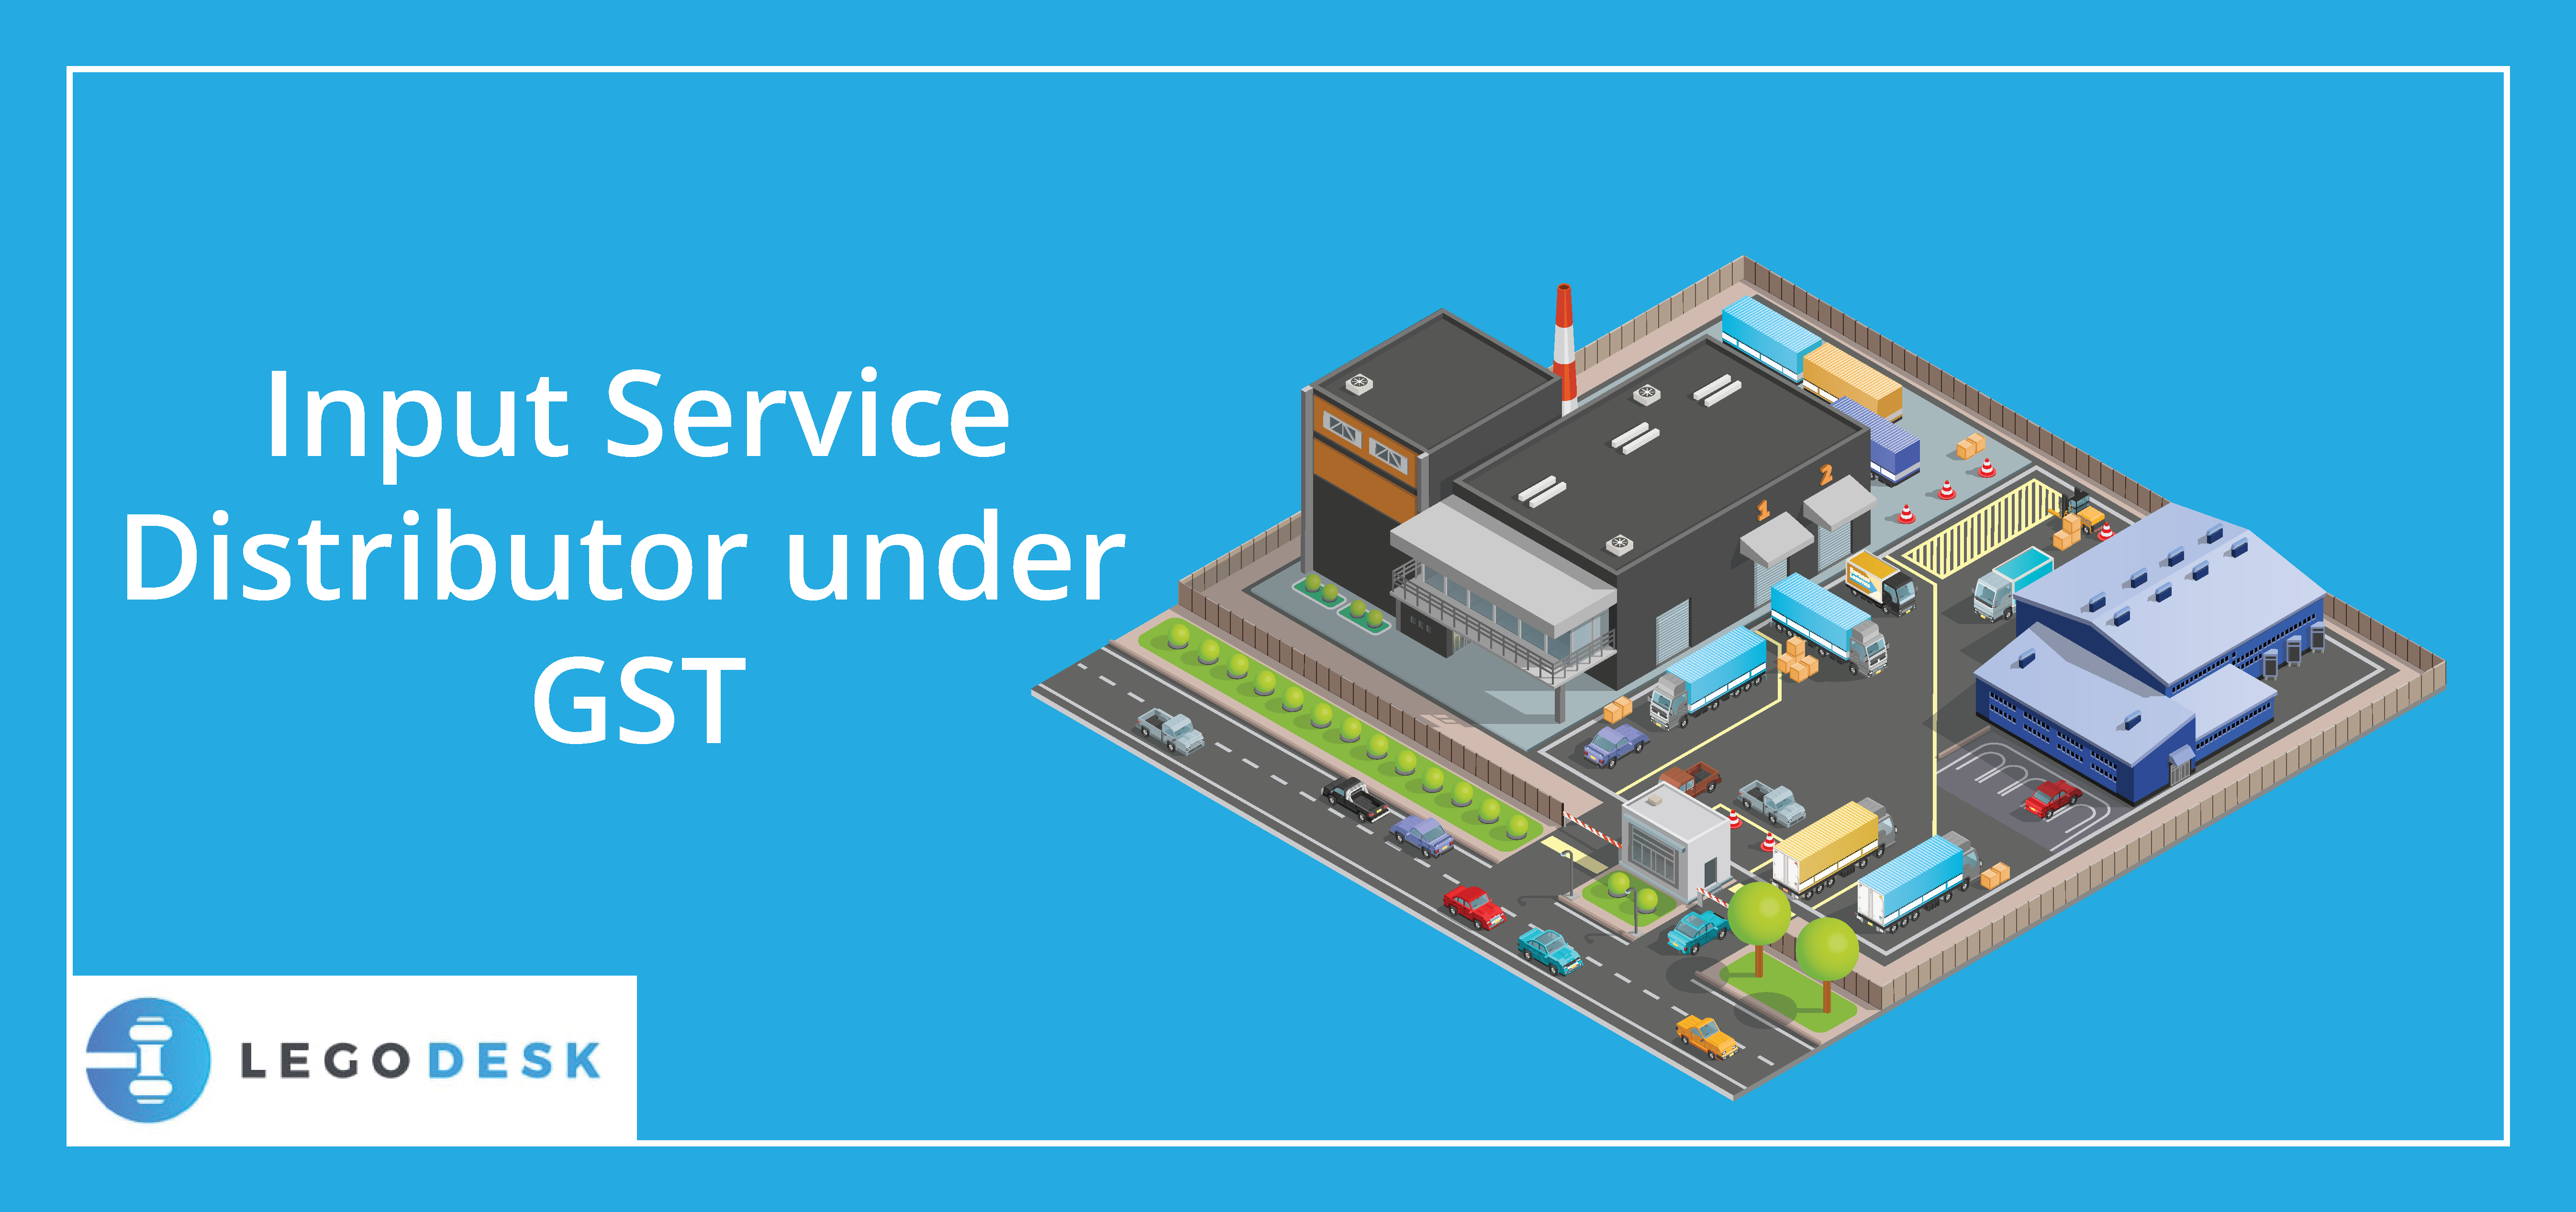 Input Service Distributor under GST